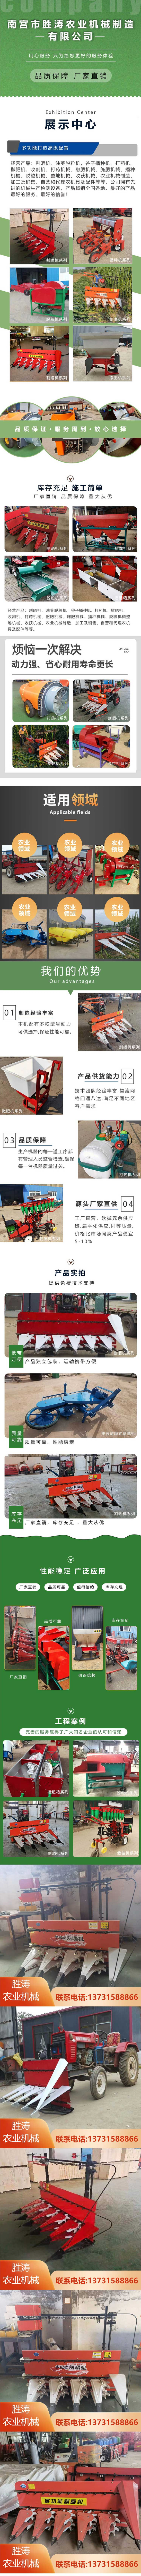 全自动-可靠性好-可以收割芝麻豆类农作物-多功能割晒机.jpg